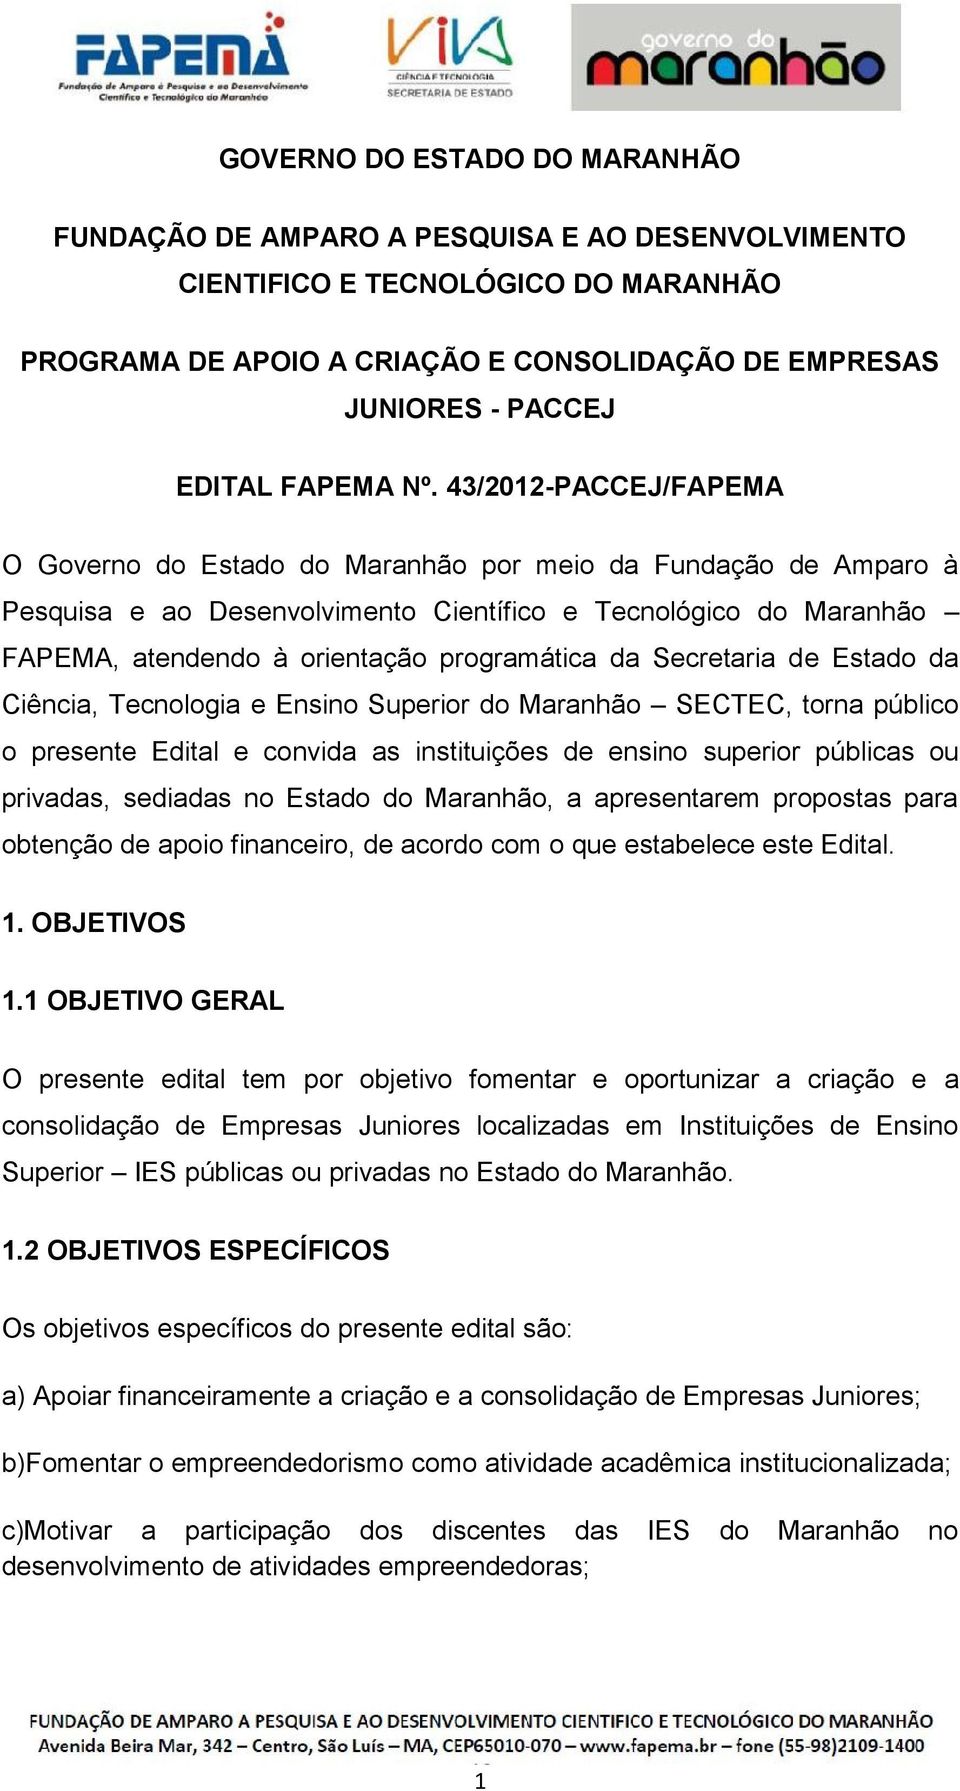 43/2012-PACCEJ/FAPEMA O Governo do Estado do Maranhão por meio da Fundação de Amparo à Pesquisa e ao Desenvolvimento Científico e Tecnológico do Maranhão FAPEMA, atendendo à orientação programática